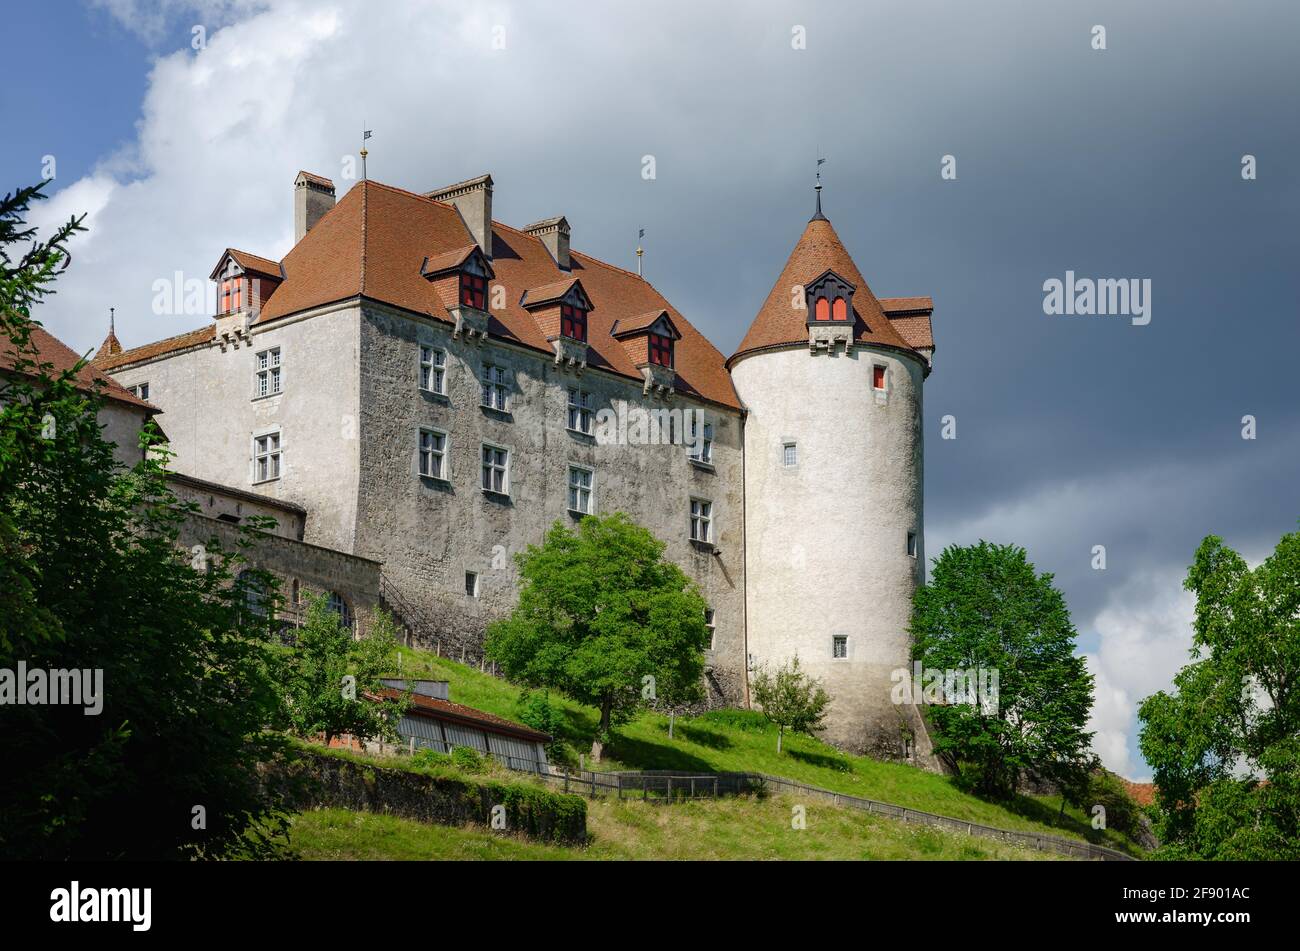 Vista esterna del villaggio di Gruyeres, famosa città casearia della svizzera. Dettaglio del suo castello medievale con sfondo nuvoloso Foto Stock